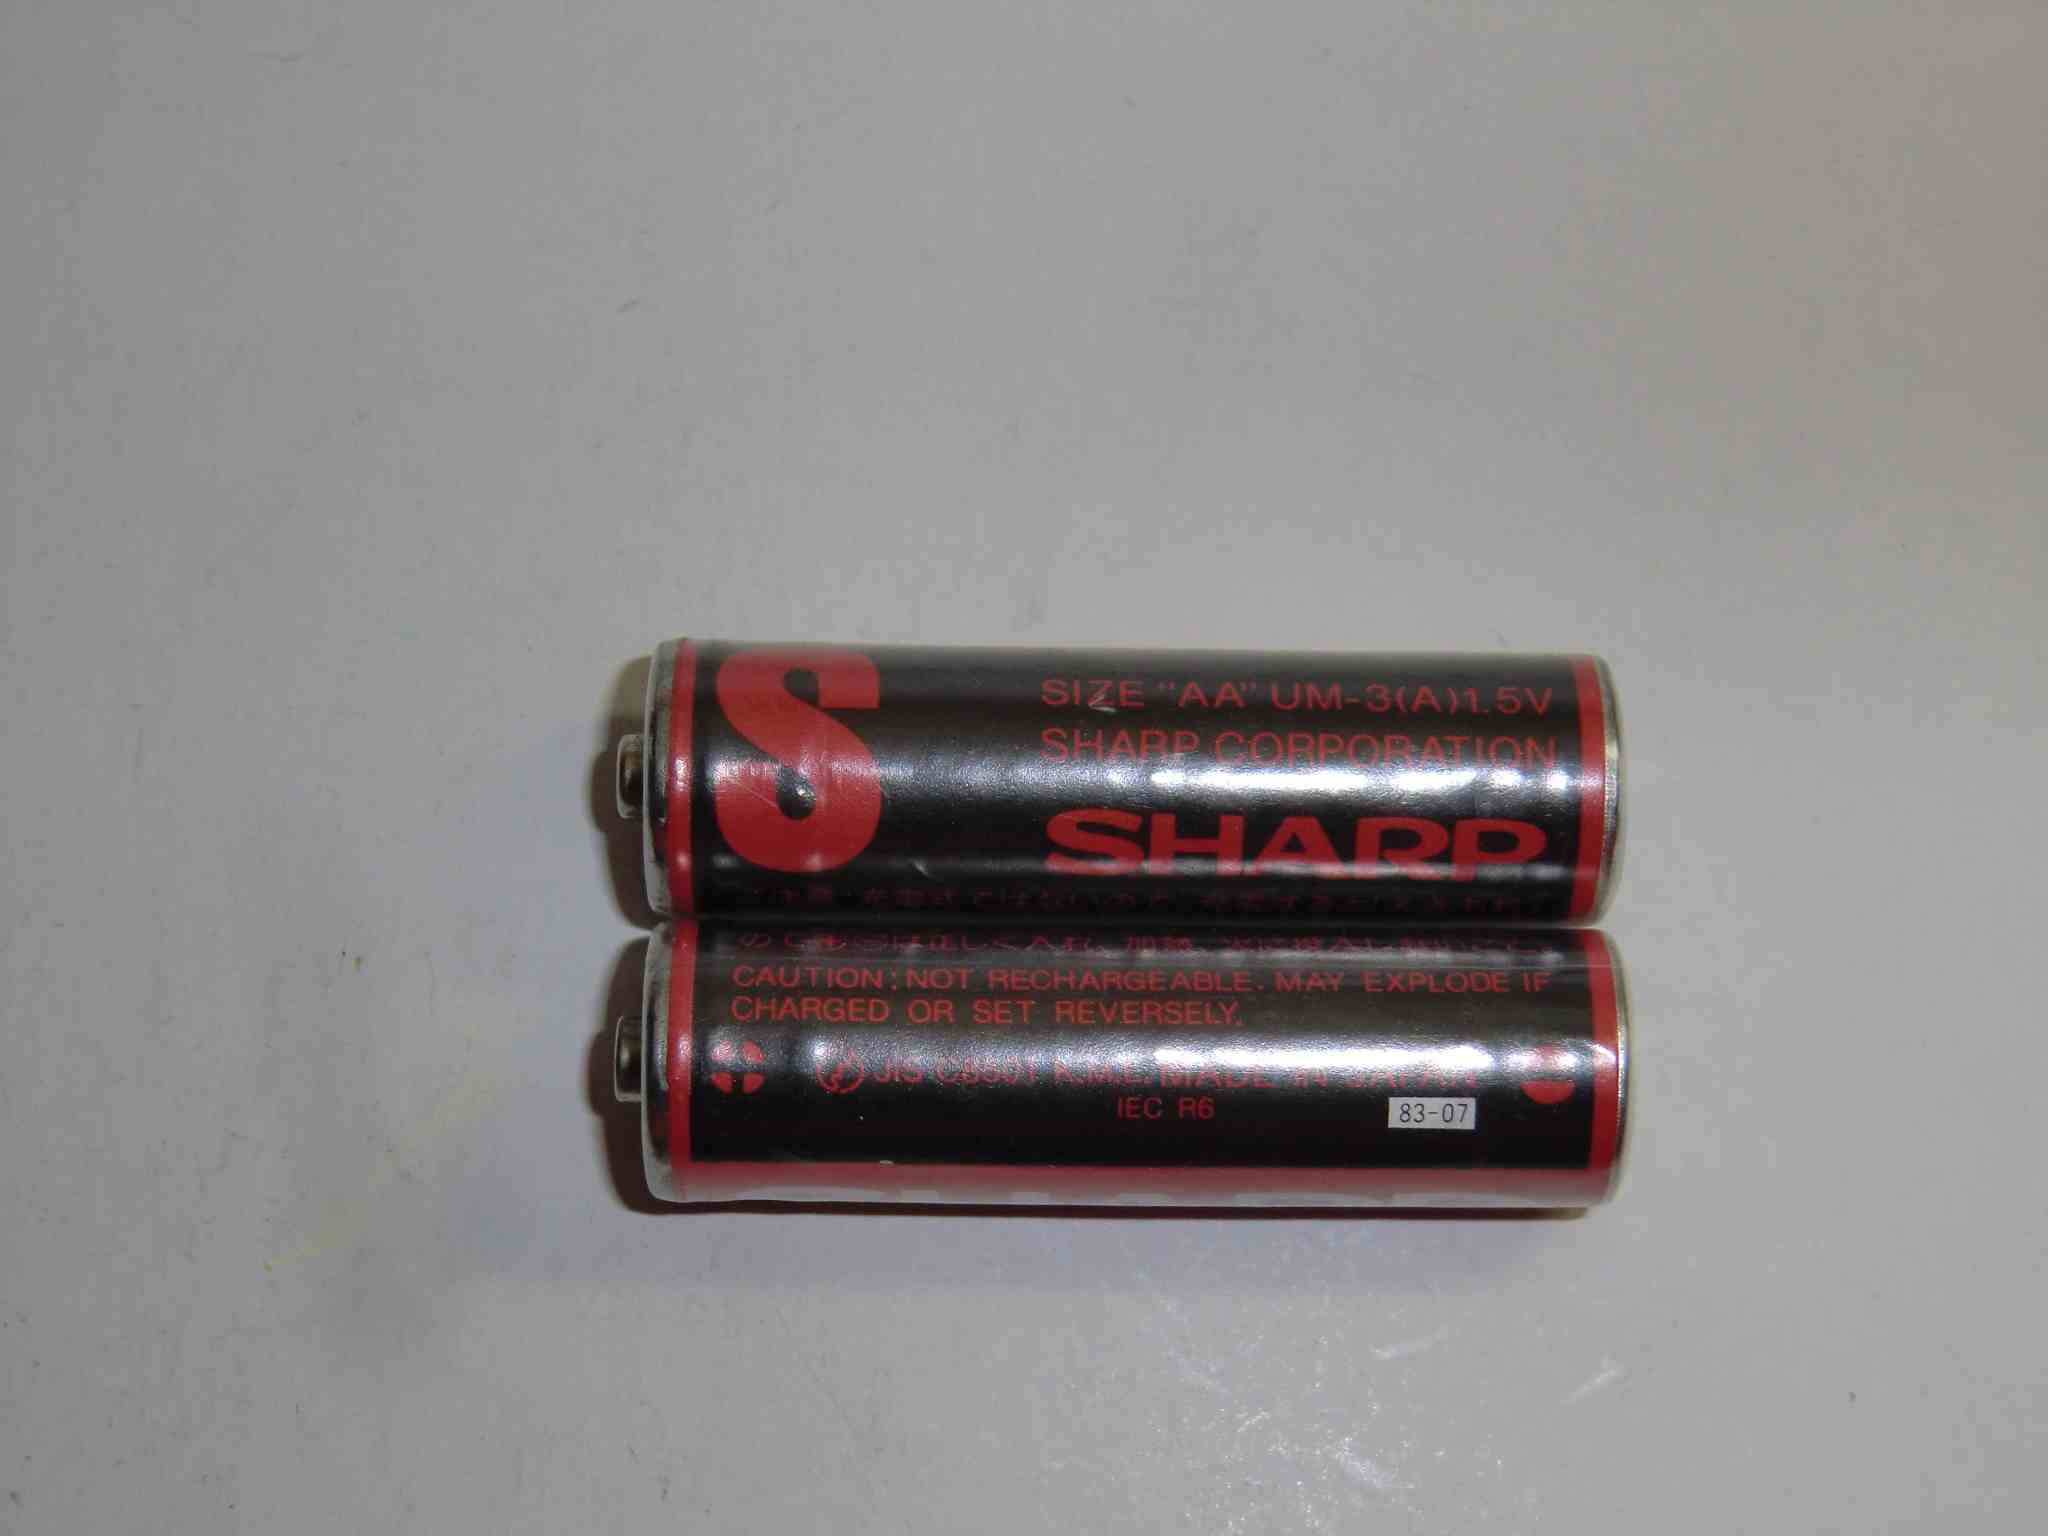 乾電池の画像集 出張所Ⅱ SHARP S 赤マンガン電池 UM-3(A) 単三型